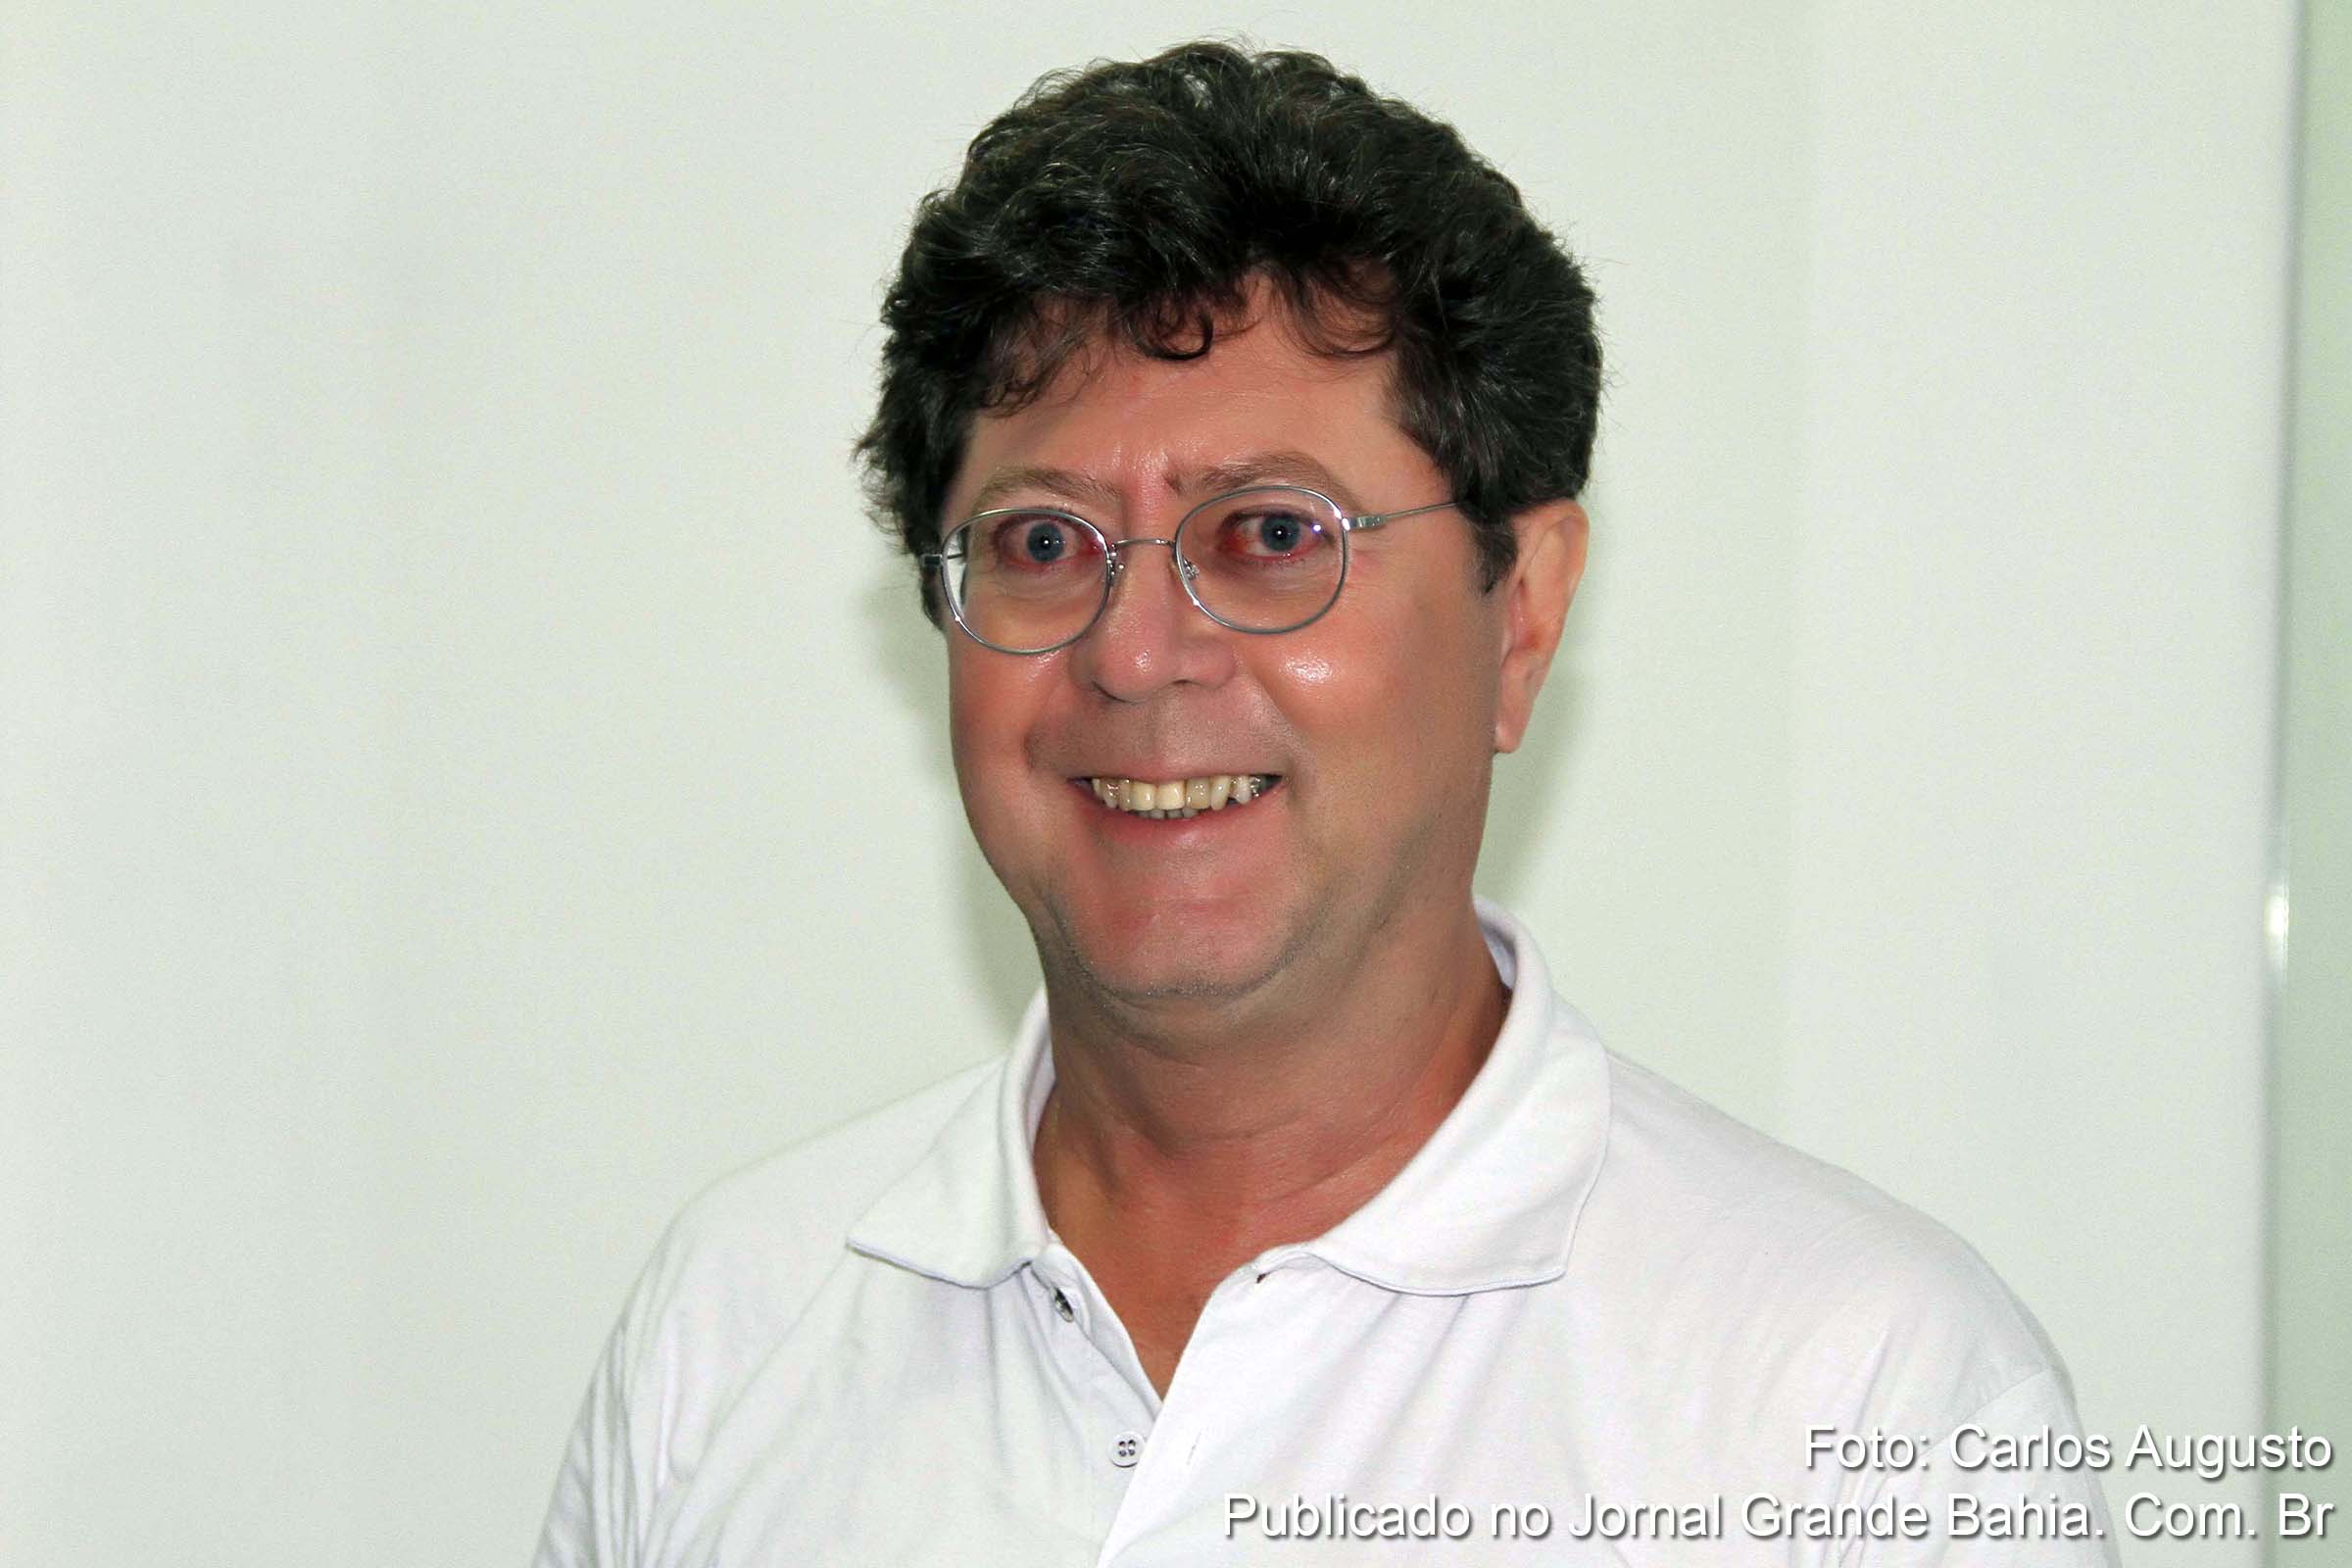 Juarez Duarte Bomfim é sociólogo e mestre em Administração pela Universidade Federal da Bahia (UFBA), doutor em Geografia Humana pela Universidade de Salamanca, Espanha; e professor da Universidade Estadual de Feira de Santana (UEFS).